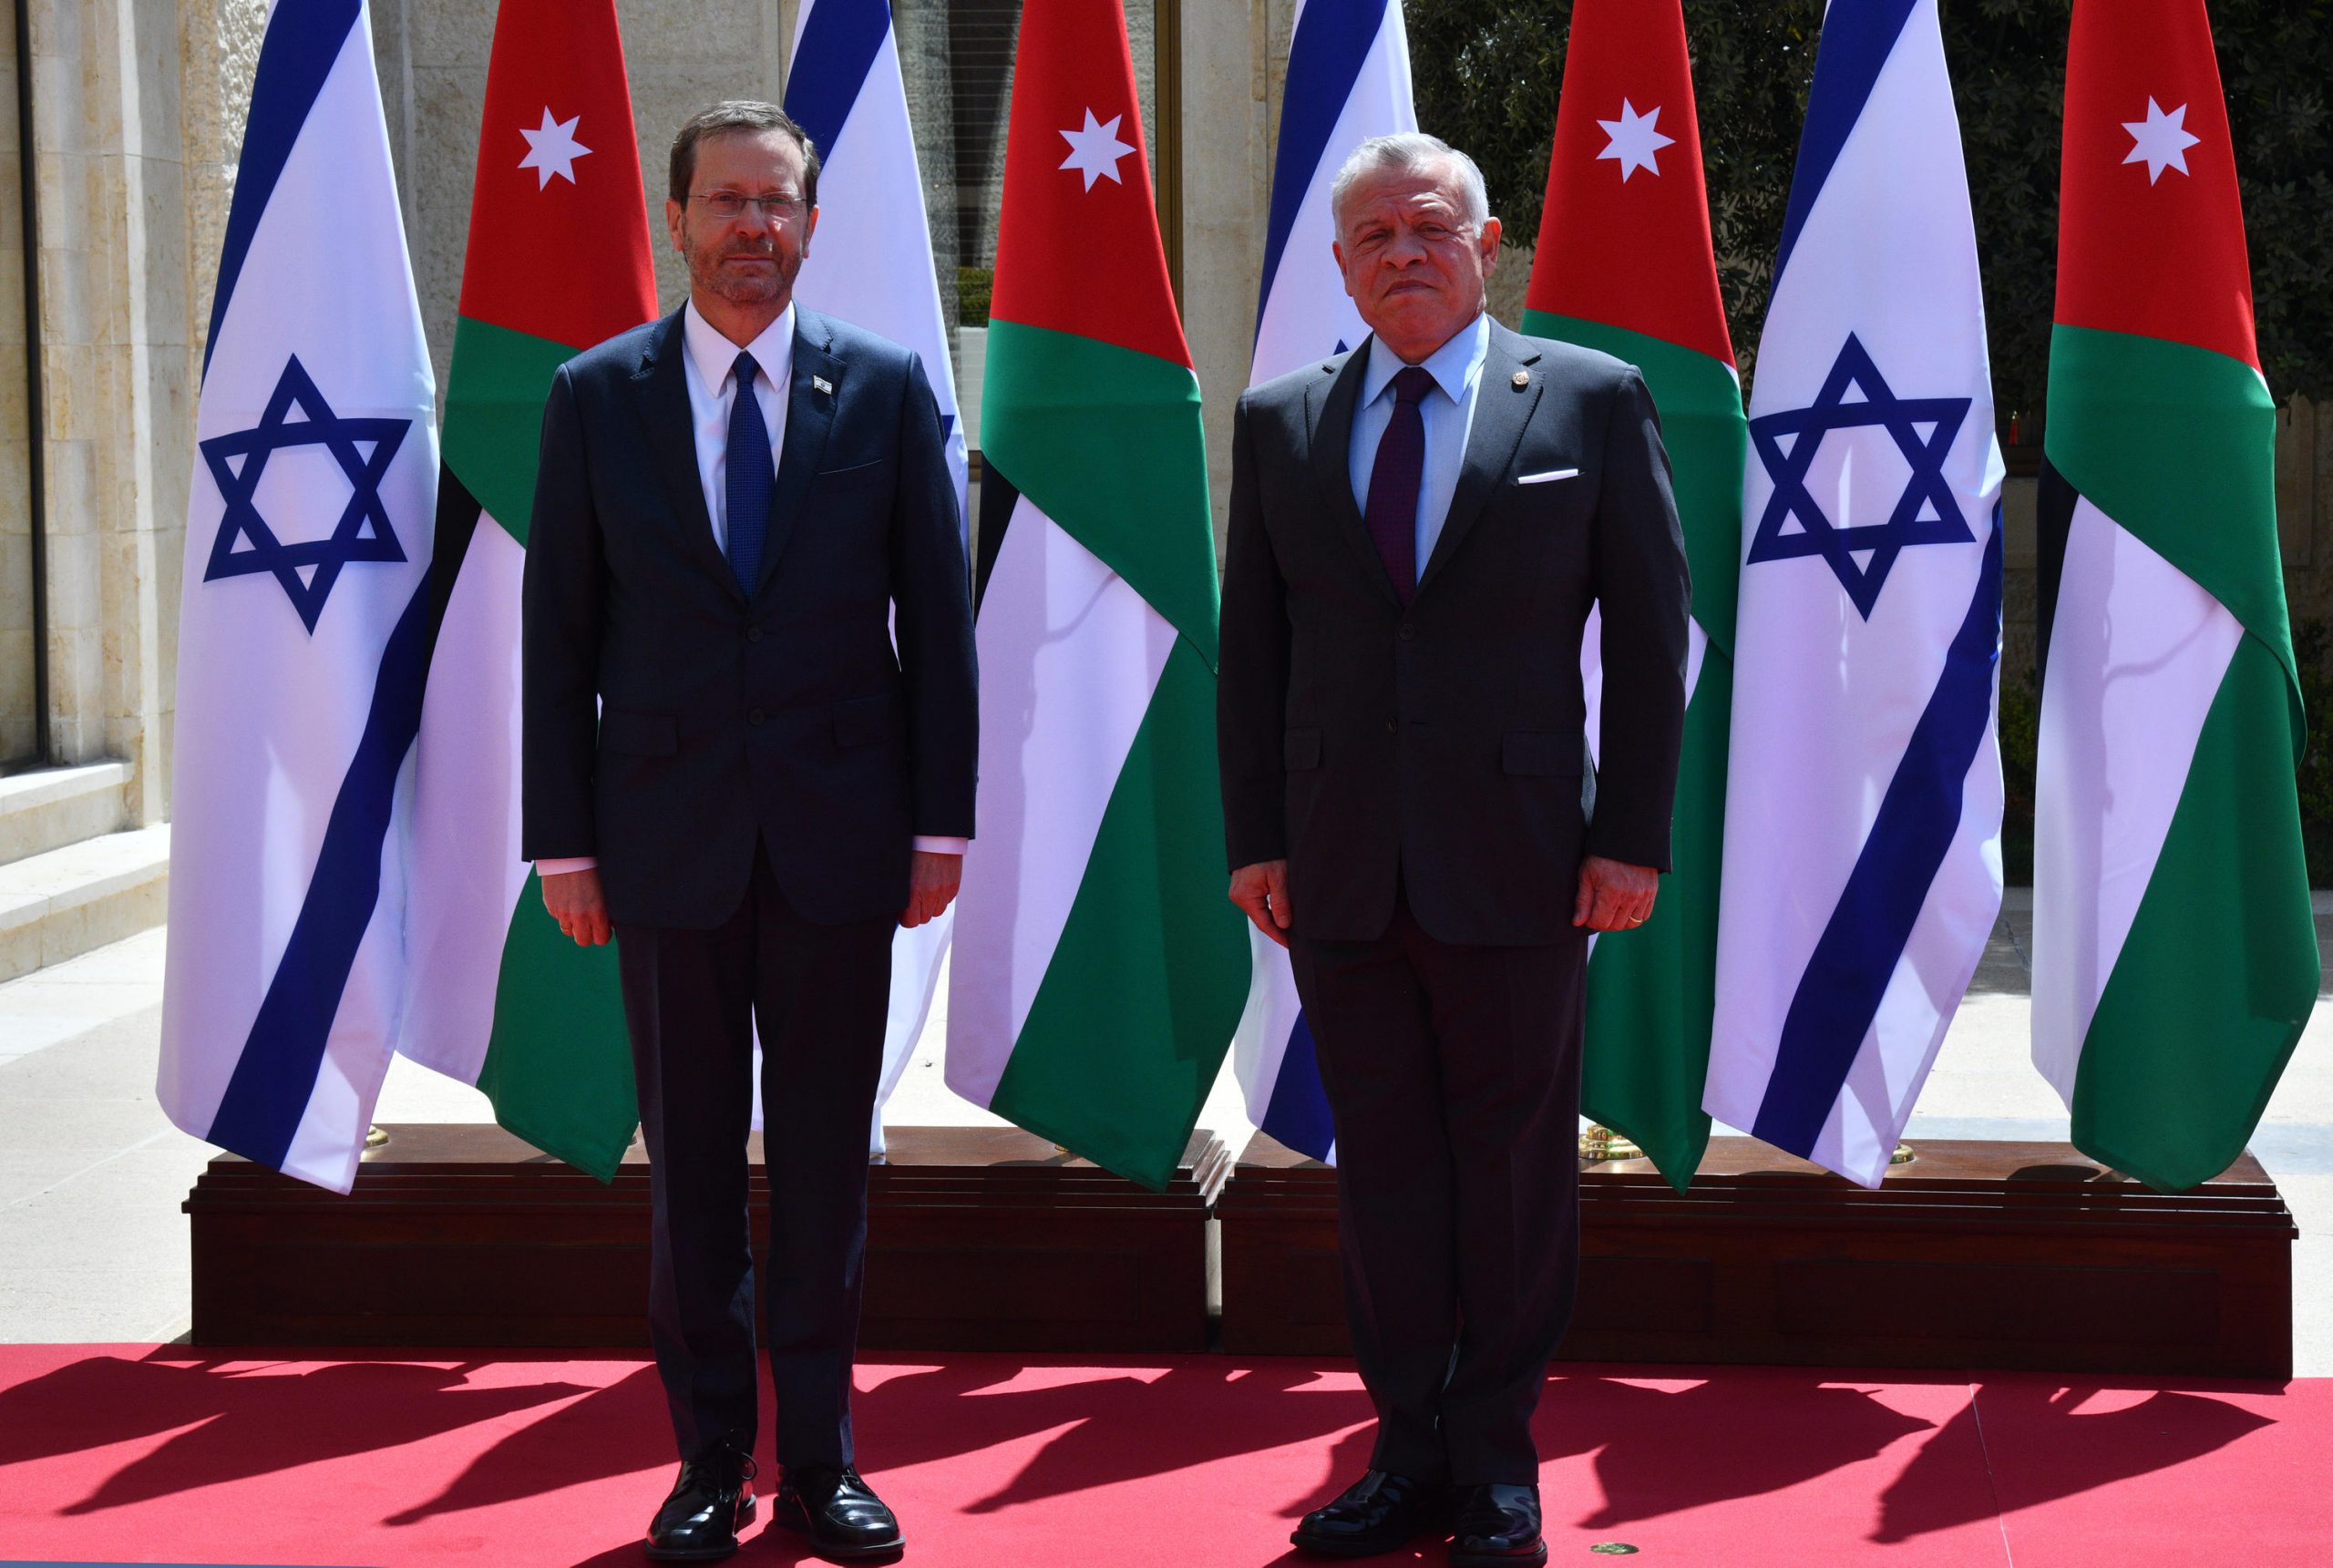 נשיא המדינה ביקר בירדן בביקור היסטורי, ונפגש עם מלך ירדן